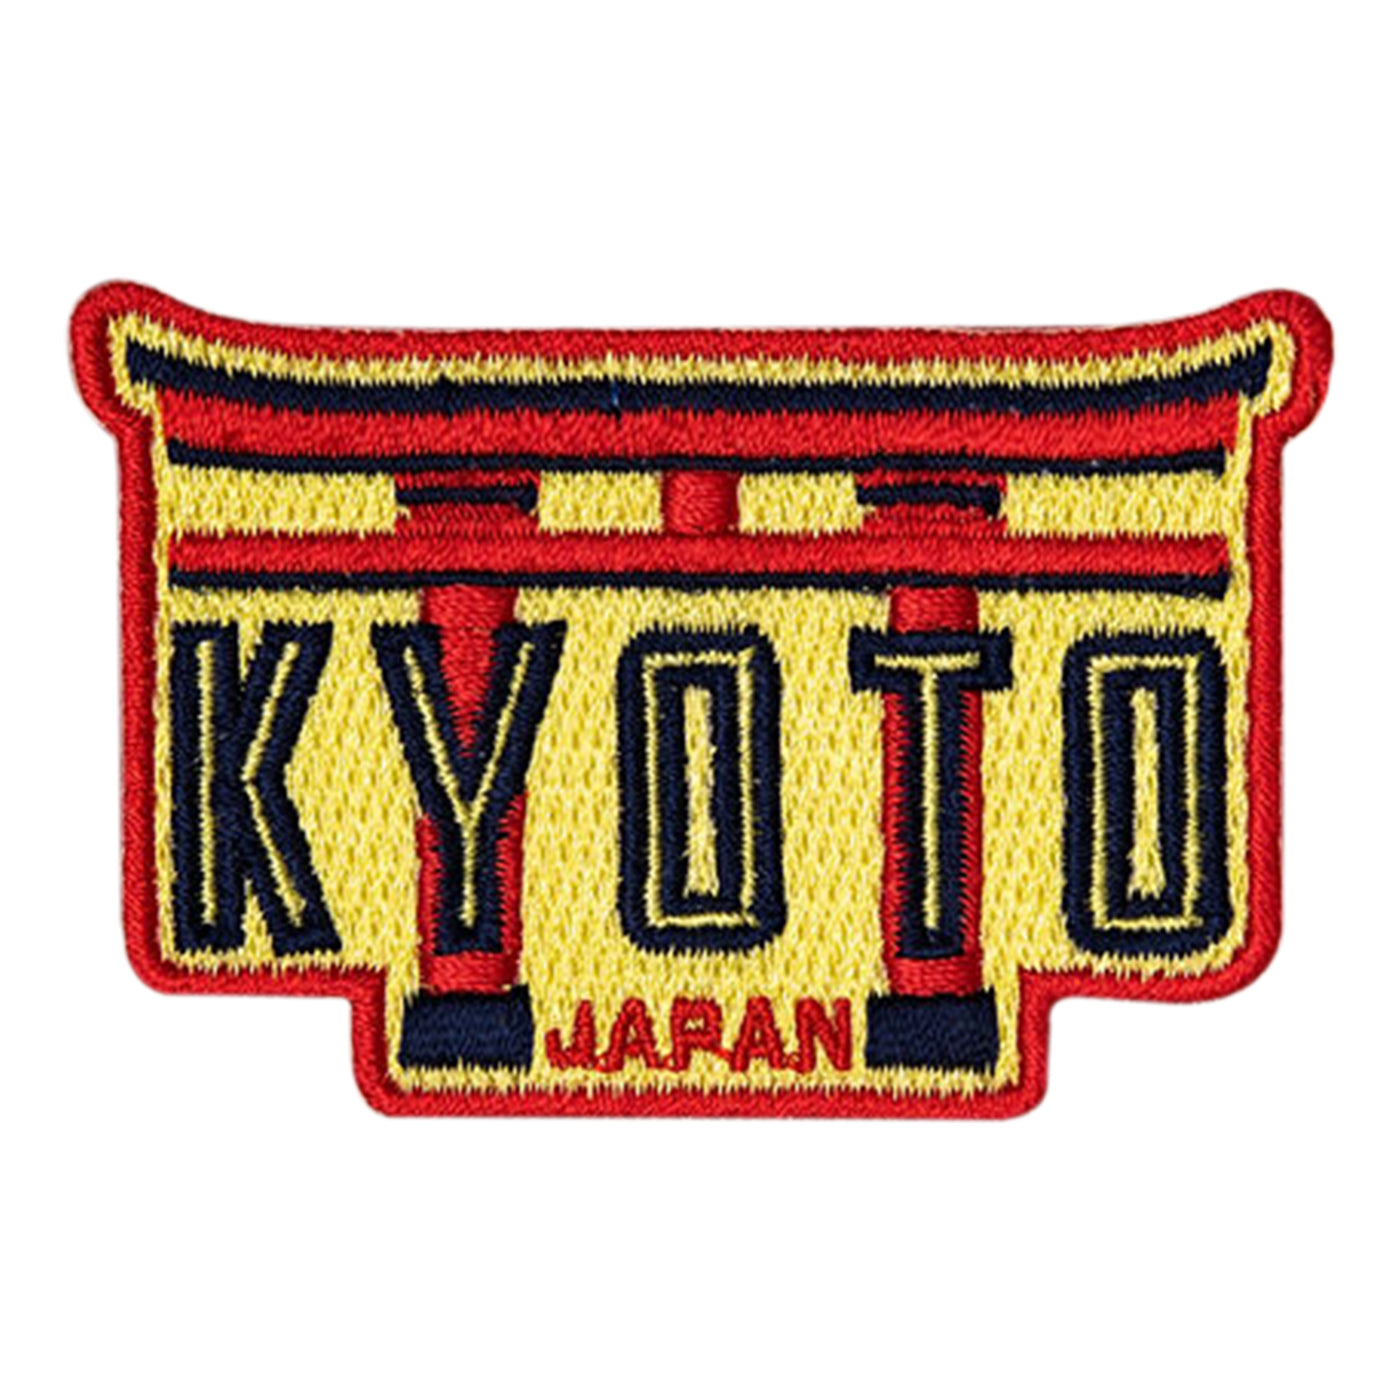 Kyoto Japan Patch